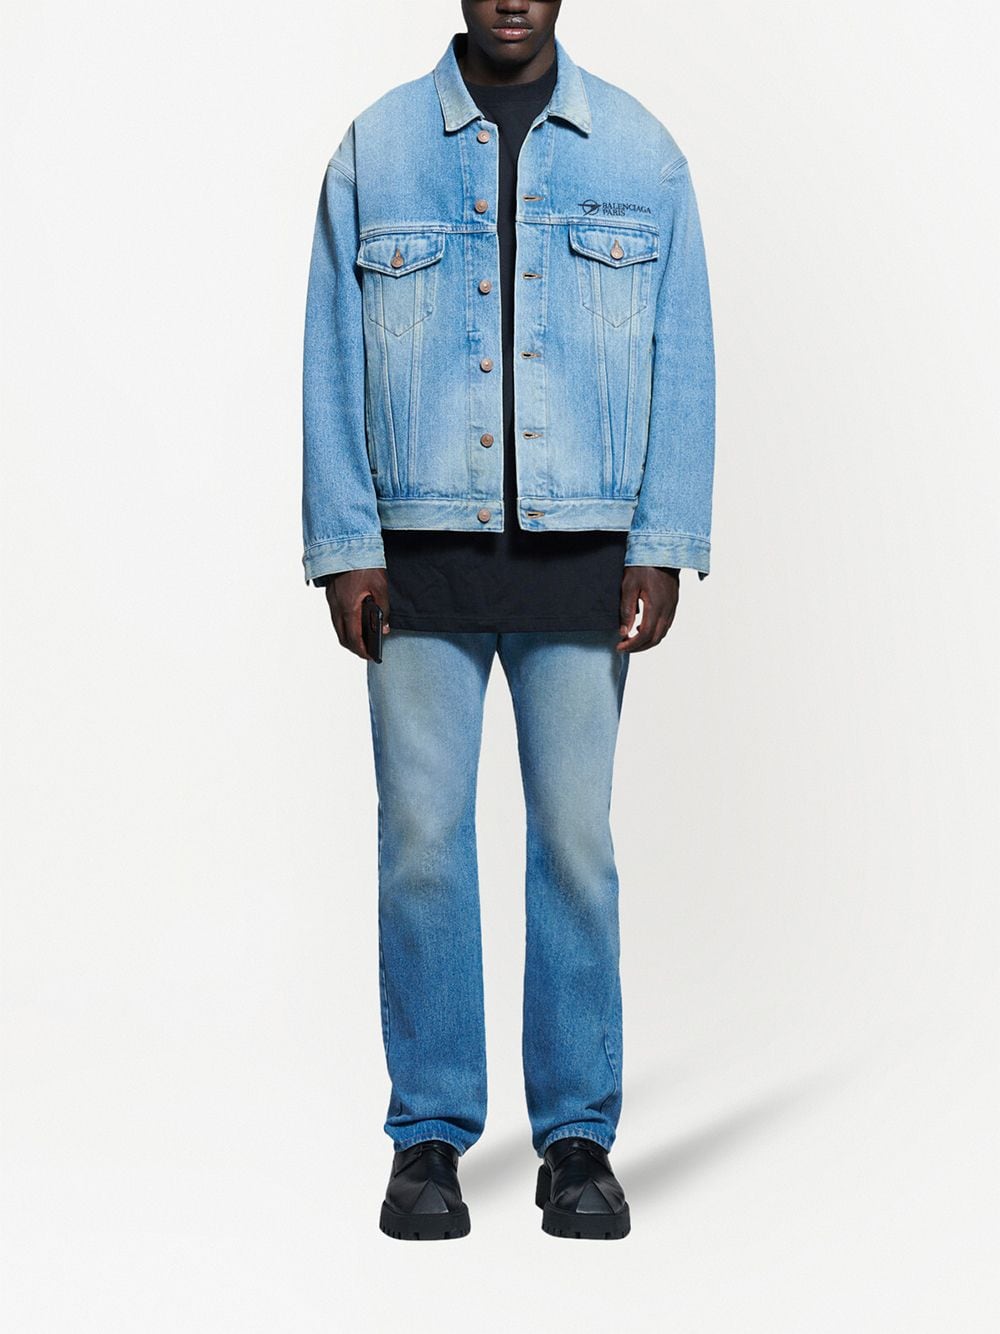 фото Balenciaga джинсовая куртка с вышитым логотипом